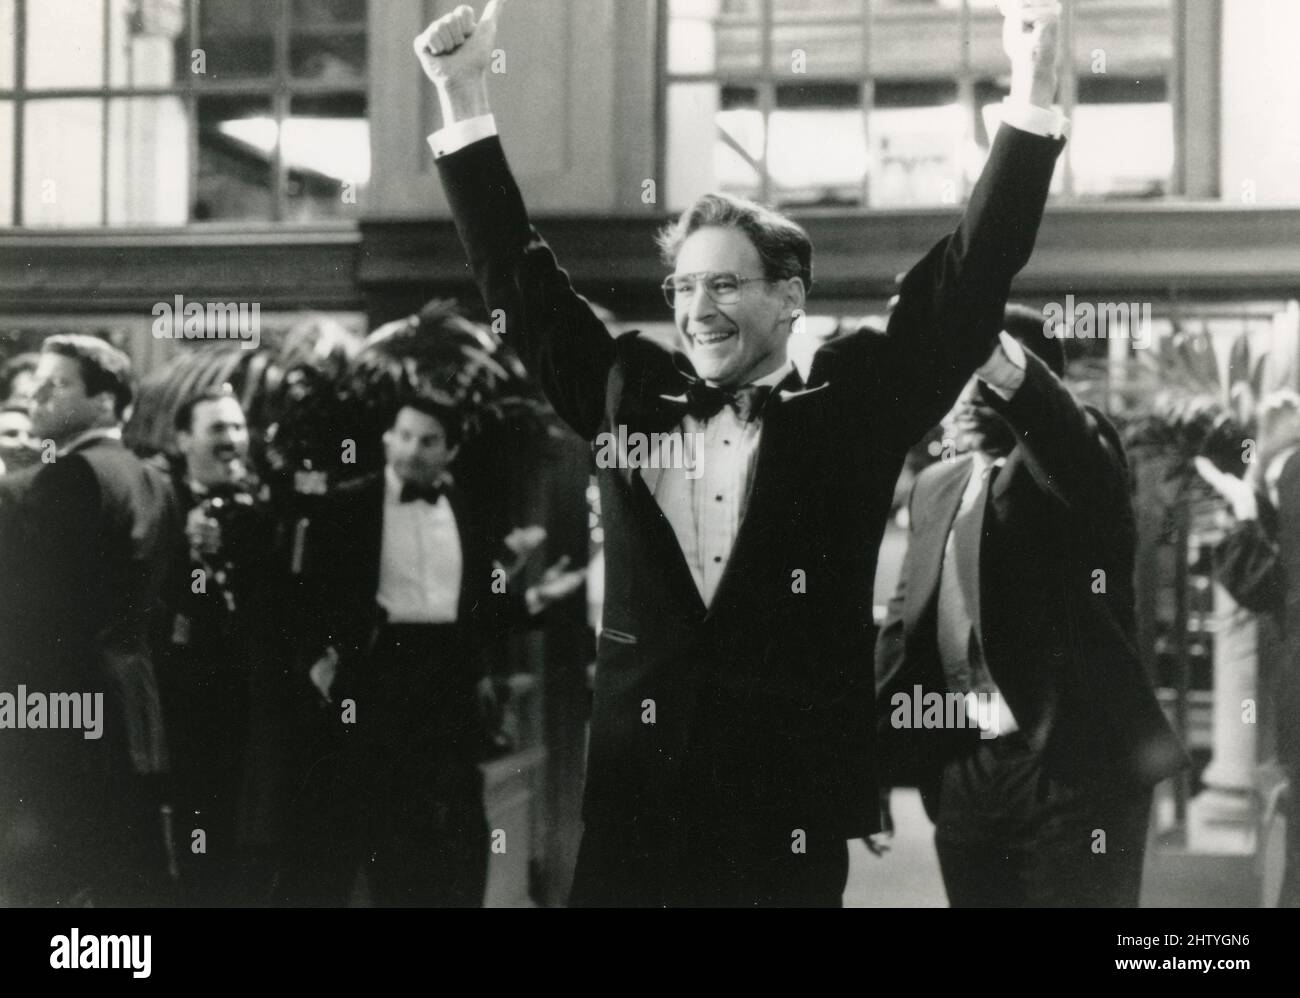 L'acteur américain Kevin Kline dans le film Dave, USA 1993 Banque D'Images